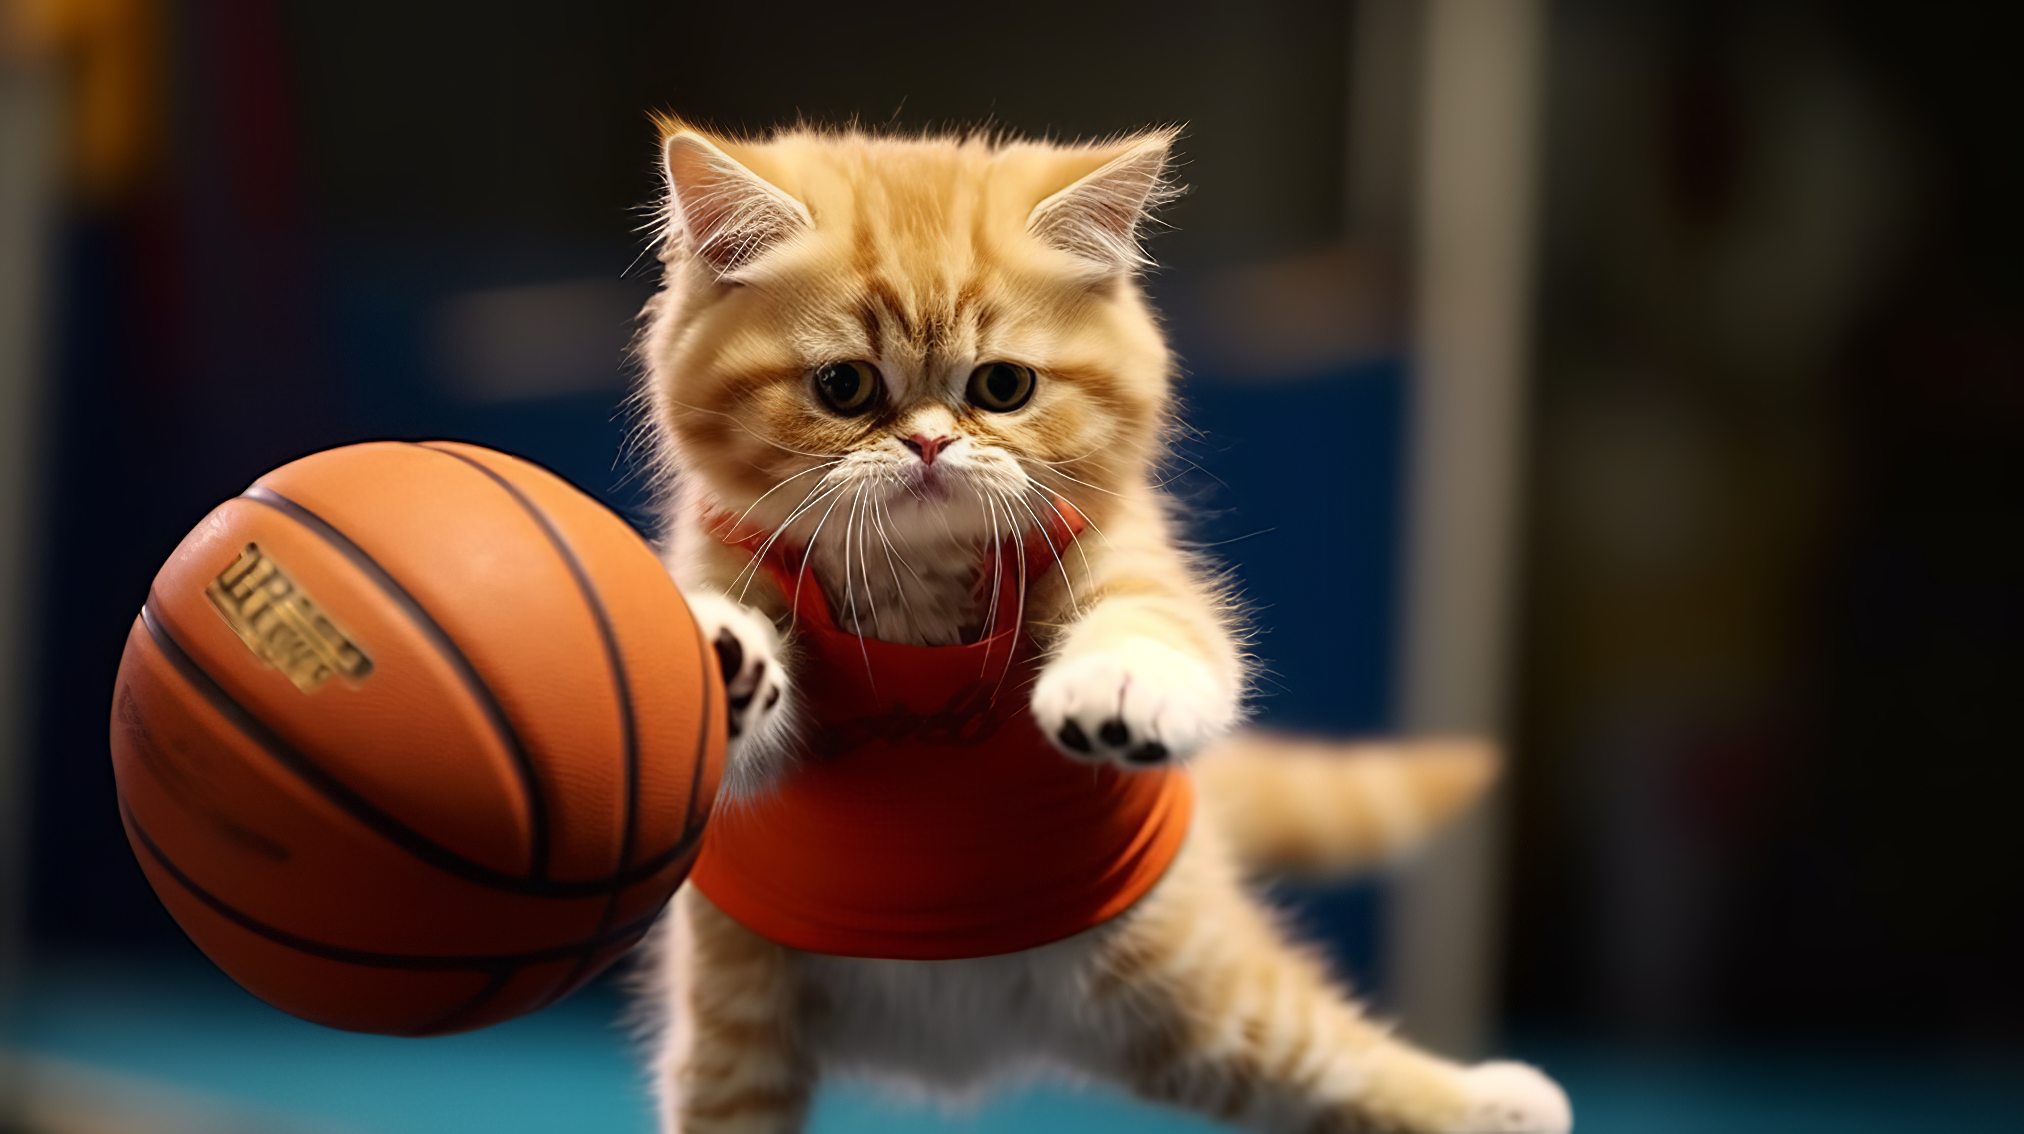 BasketBall Player